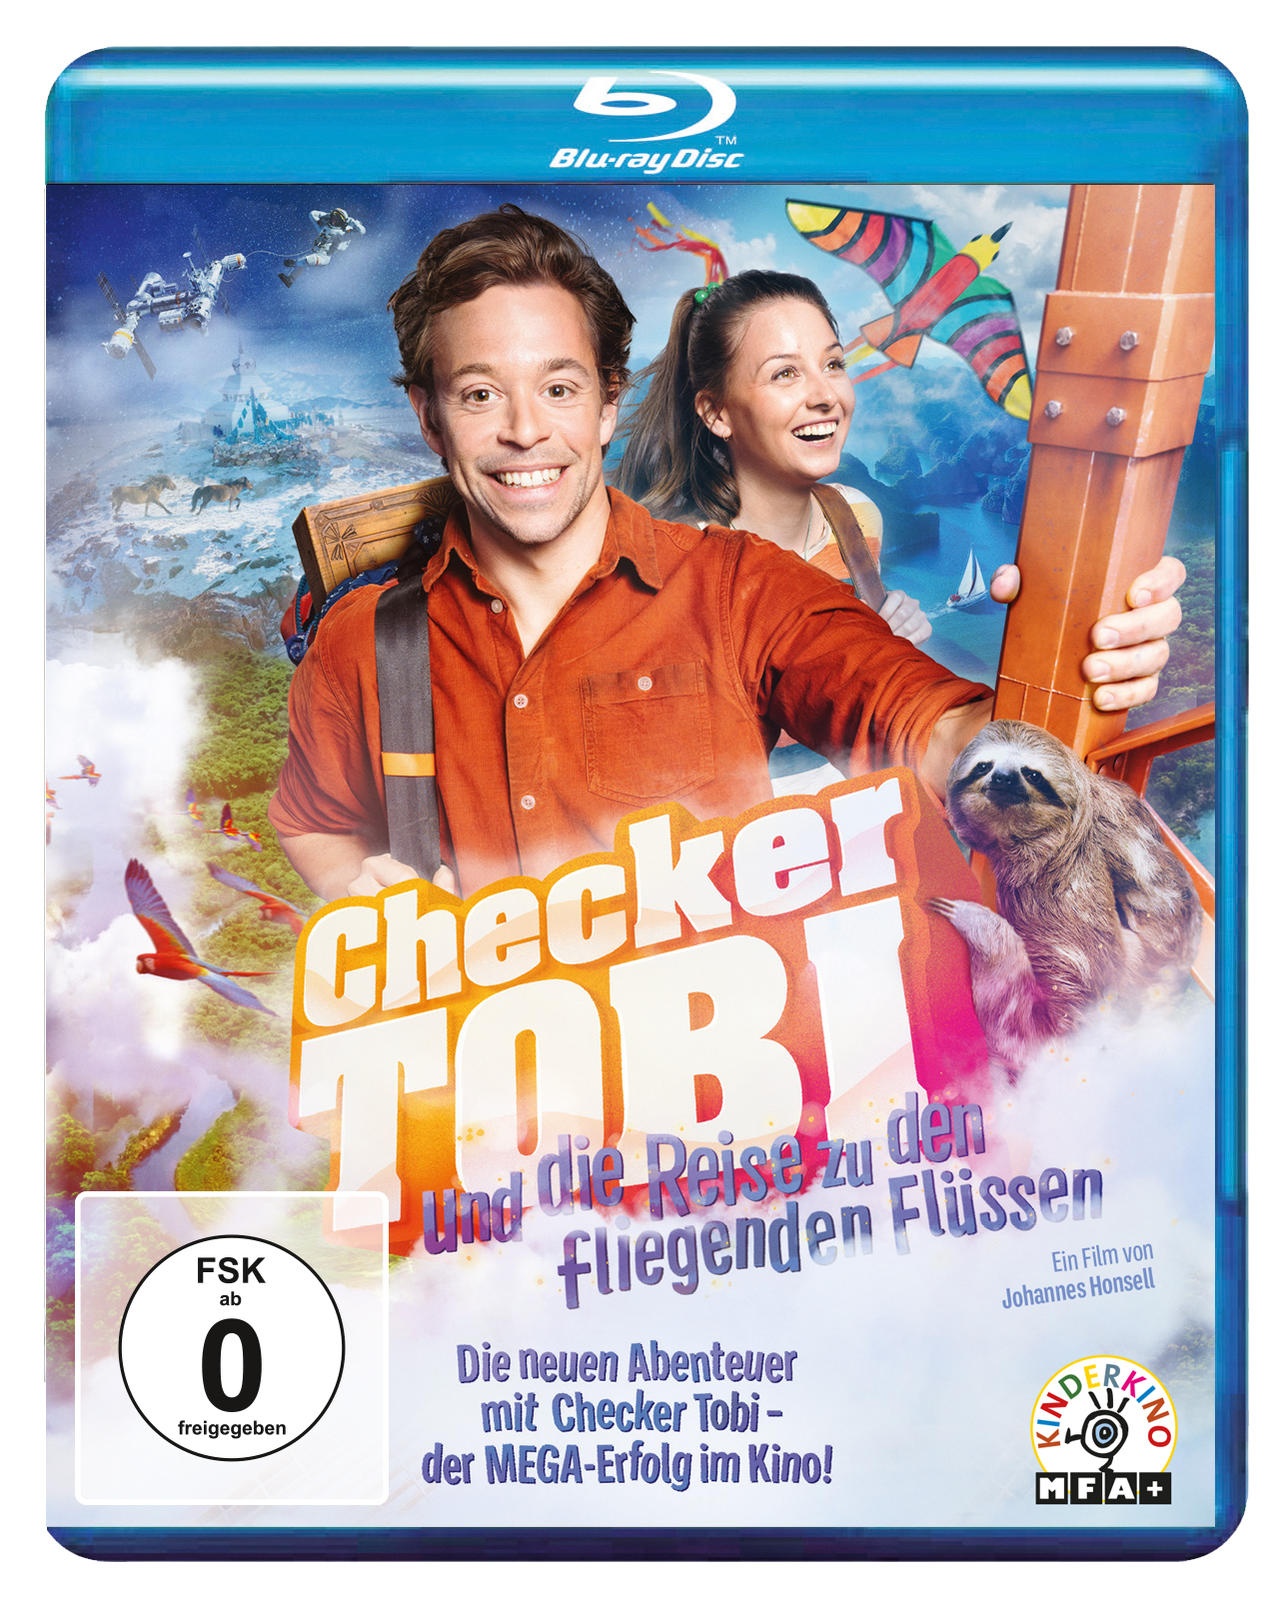 Checker Tobi und die den fliegenden Blu-ray Reise Flüssen zu